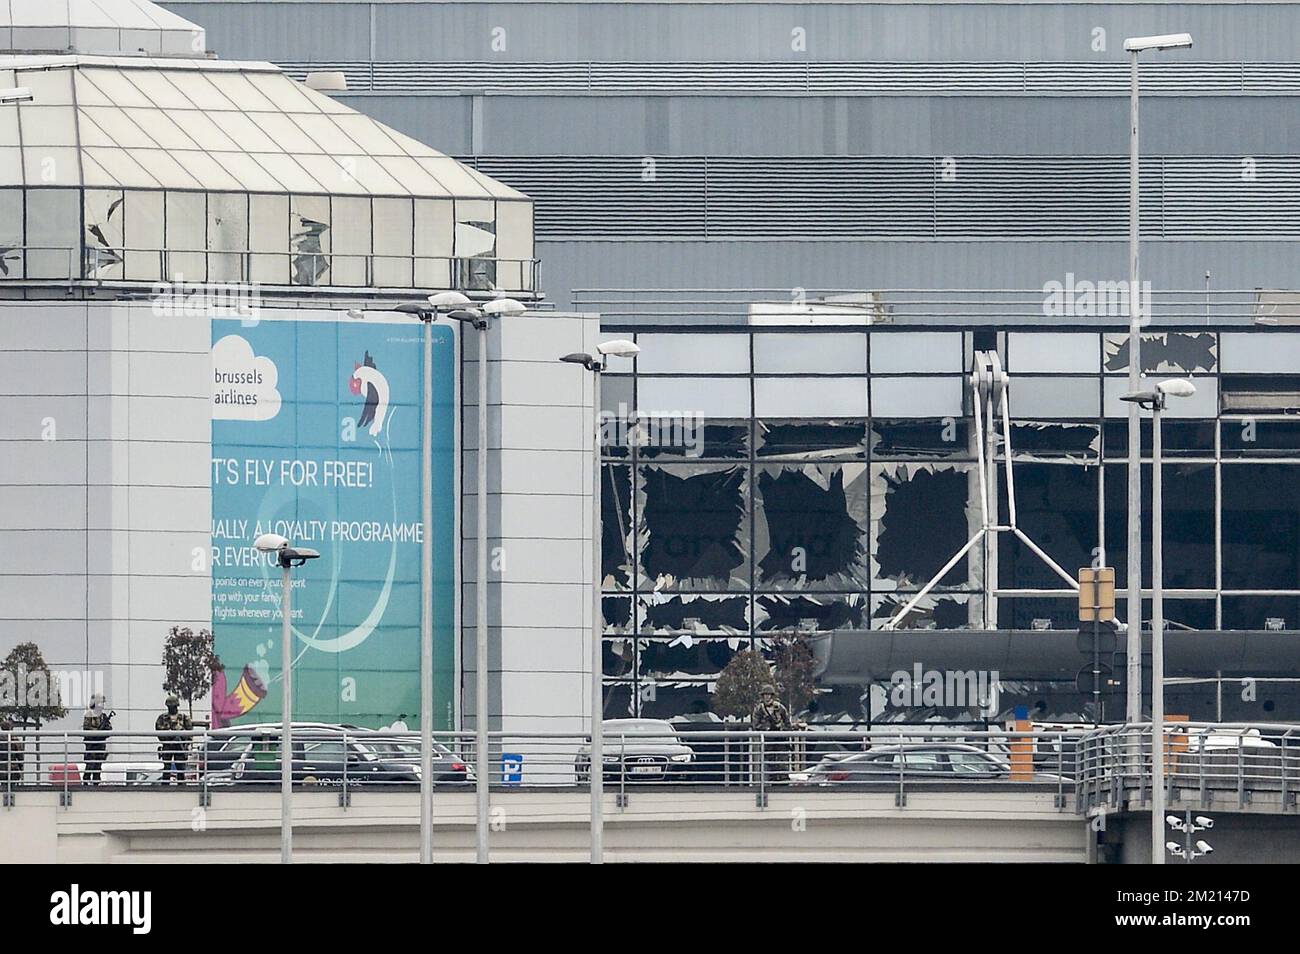 La sala delle partenze esplosa raffigurata all'aeroporto di Bruxelles, a Zaventem, martedì 22 marzo 2016. Due esplosioni nella sala partenze dell'aeroporto di Bruxelles questa mattina hanno causato la morte di 11 persone, 81 ferite. Un'altra esplosione è avvenuta nella stazione della metropolitana Maelbeek - Maalbeek, la compagnia di trasporti pubblici di Bruxelles STIB-MIVB ha confermato 15 morti e 55 feriti. Fonti governative parlano di un attacco terroristico. Il livello di minaccia terroristica è stato aumentato a quattro in tutto il paese. Foto Stock